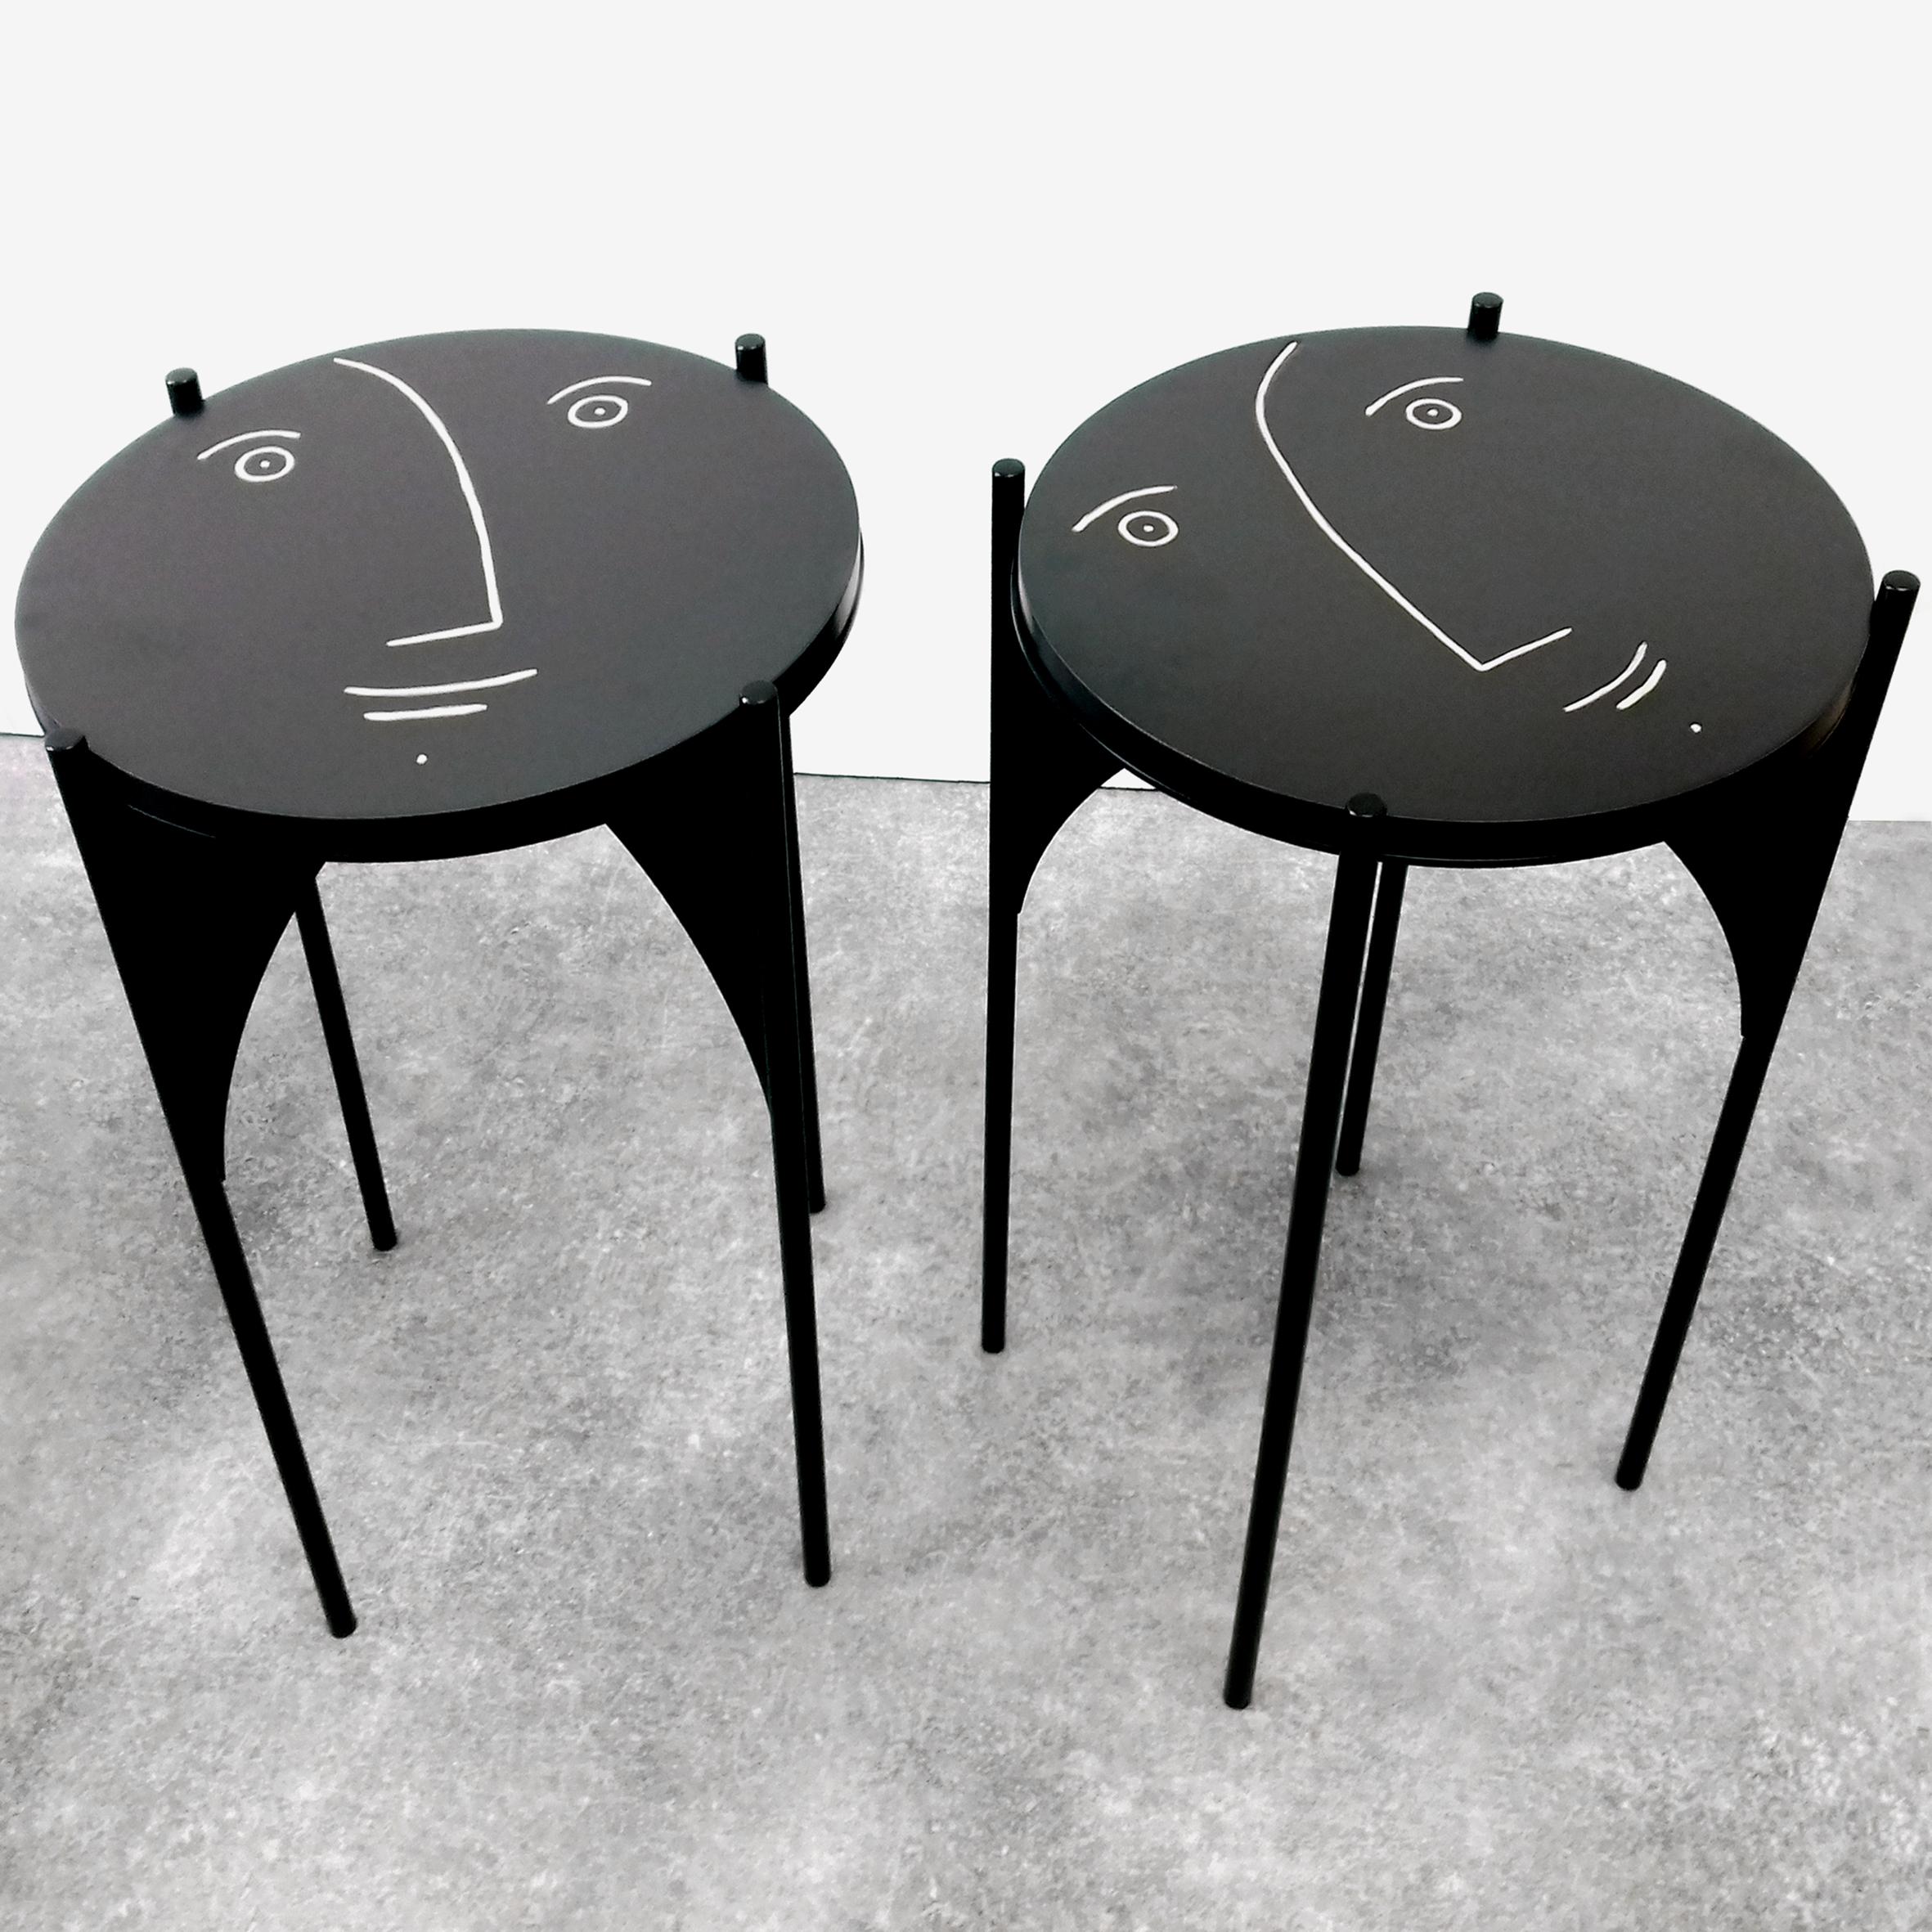 Paire unique de guéridons / tables d'appoint avec des plateaux amovibles en céramique émaillée noire par Dalo (sur des pieds en métal noir du designer français Quentin Aimable)
